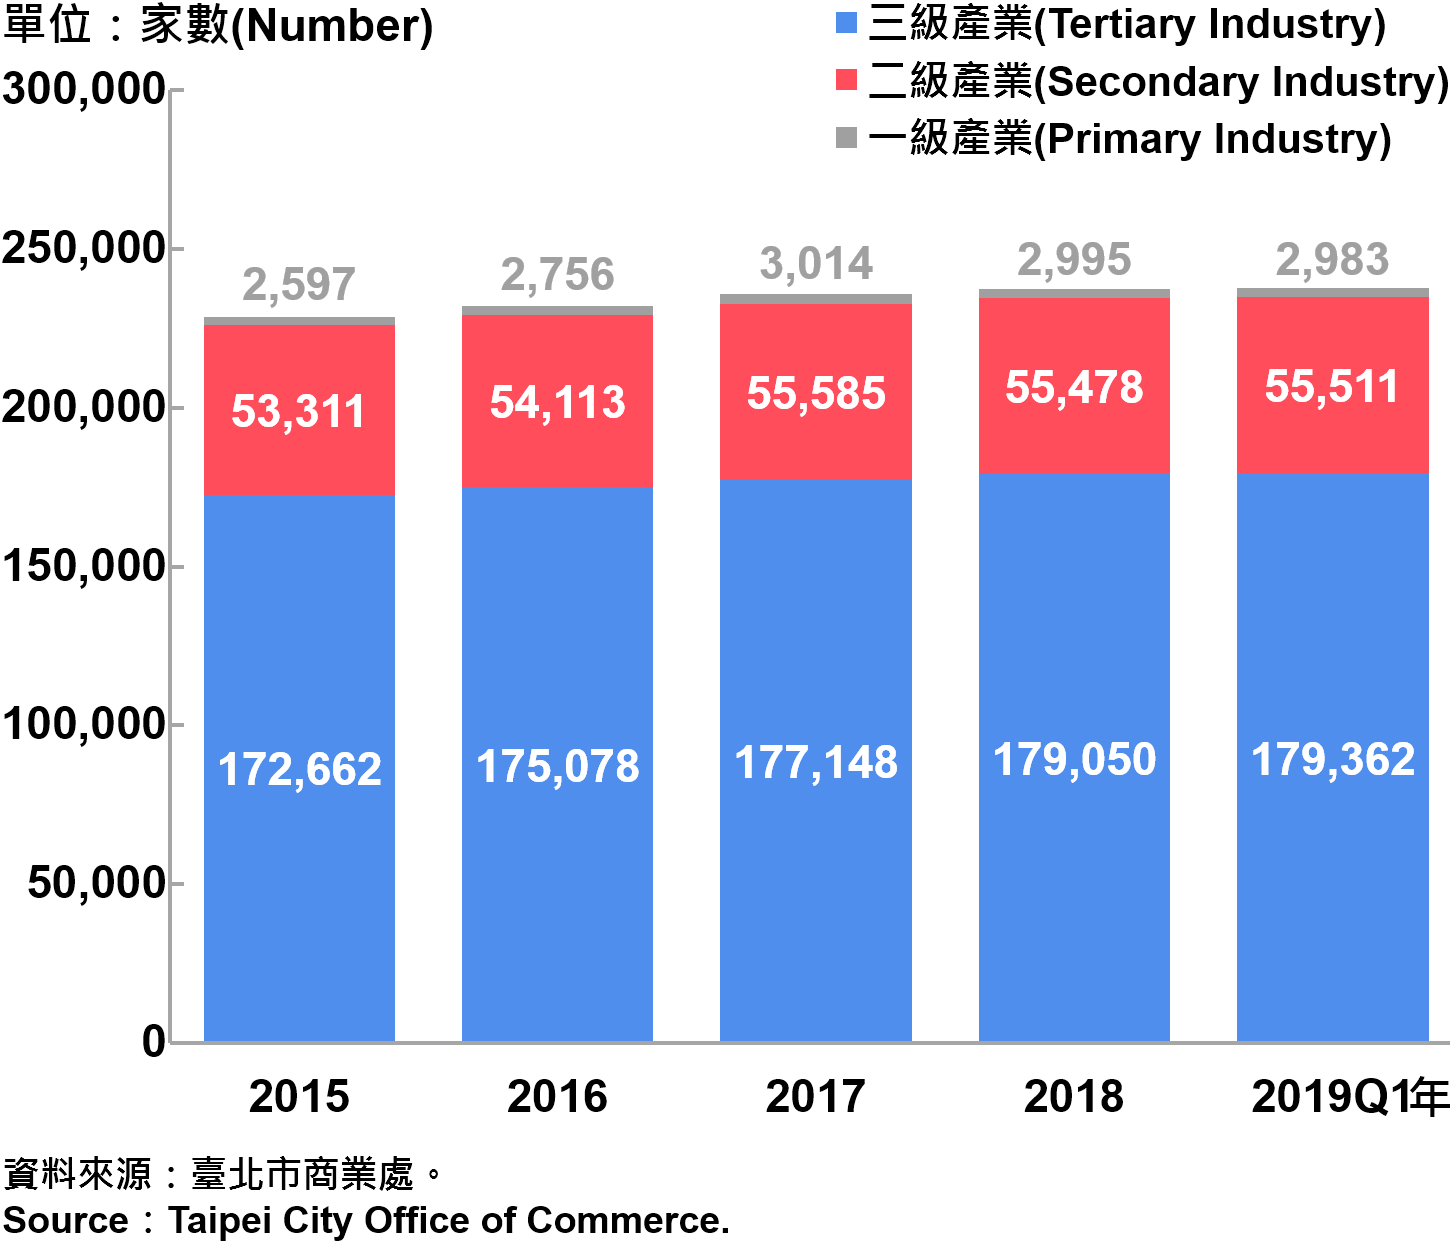 臺北市一二三級產業登記家數—2019Q1 Number of Primary , Secondary and Tertiary Industry in Taipei City—2019Q1